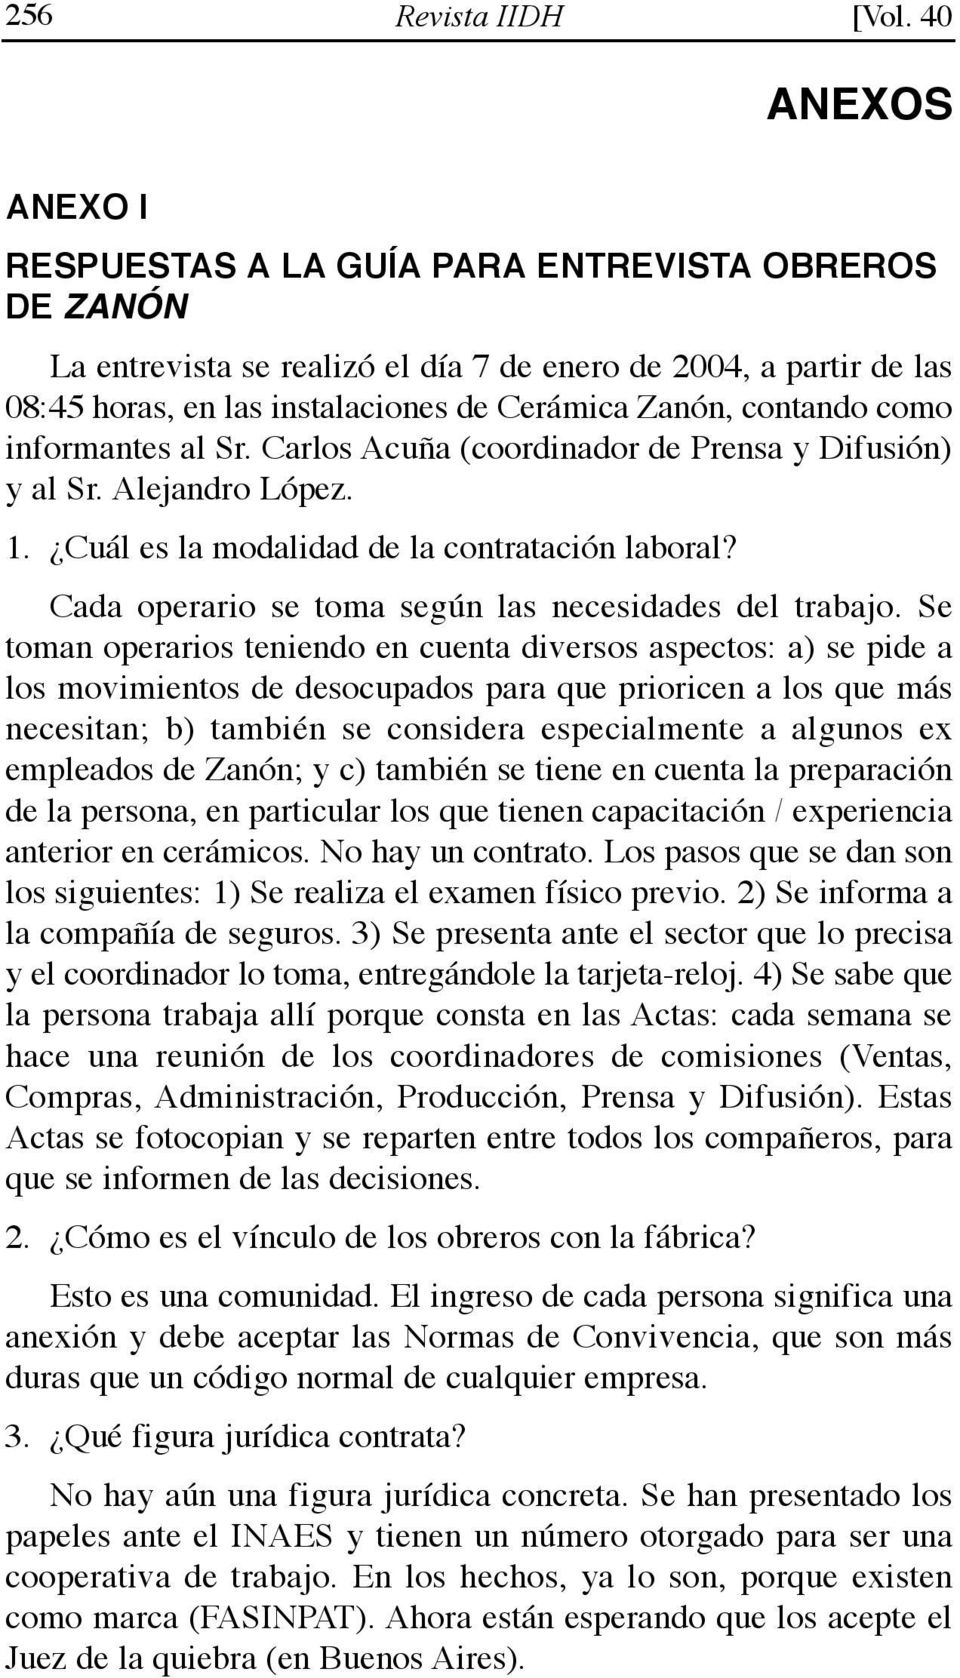 contando como informantes al Sr. Carlos Acuña (coordinador de Prensa y Difusión) y al Sr. Alejandro López. 1. Cuál es la modalidad de la contratación laboral?